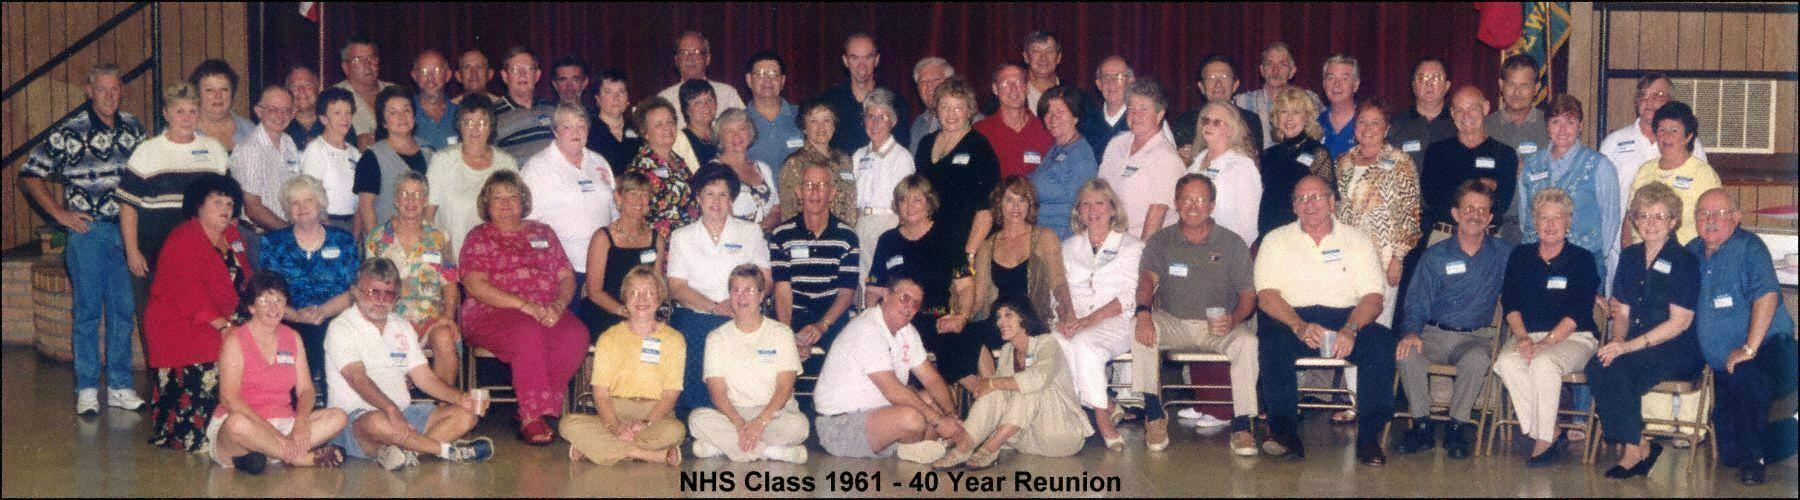 Newark High School Class of 1961 40th Reunion